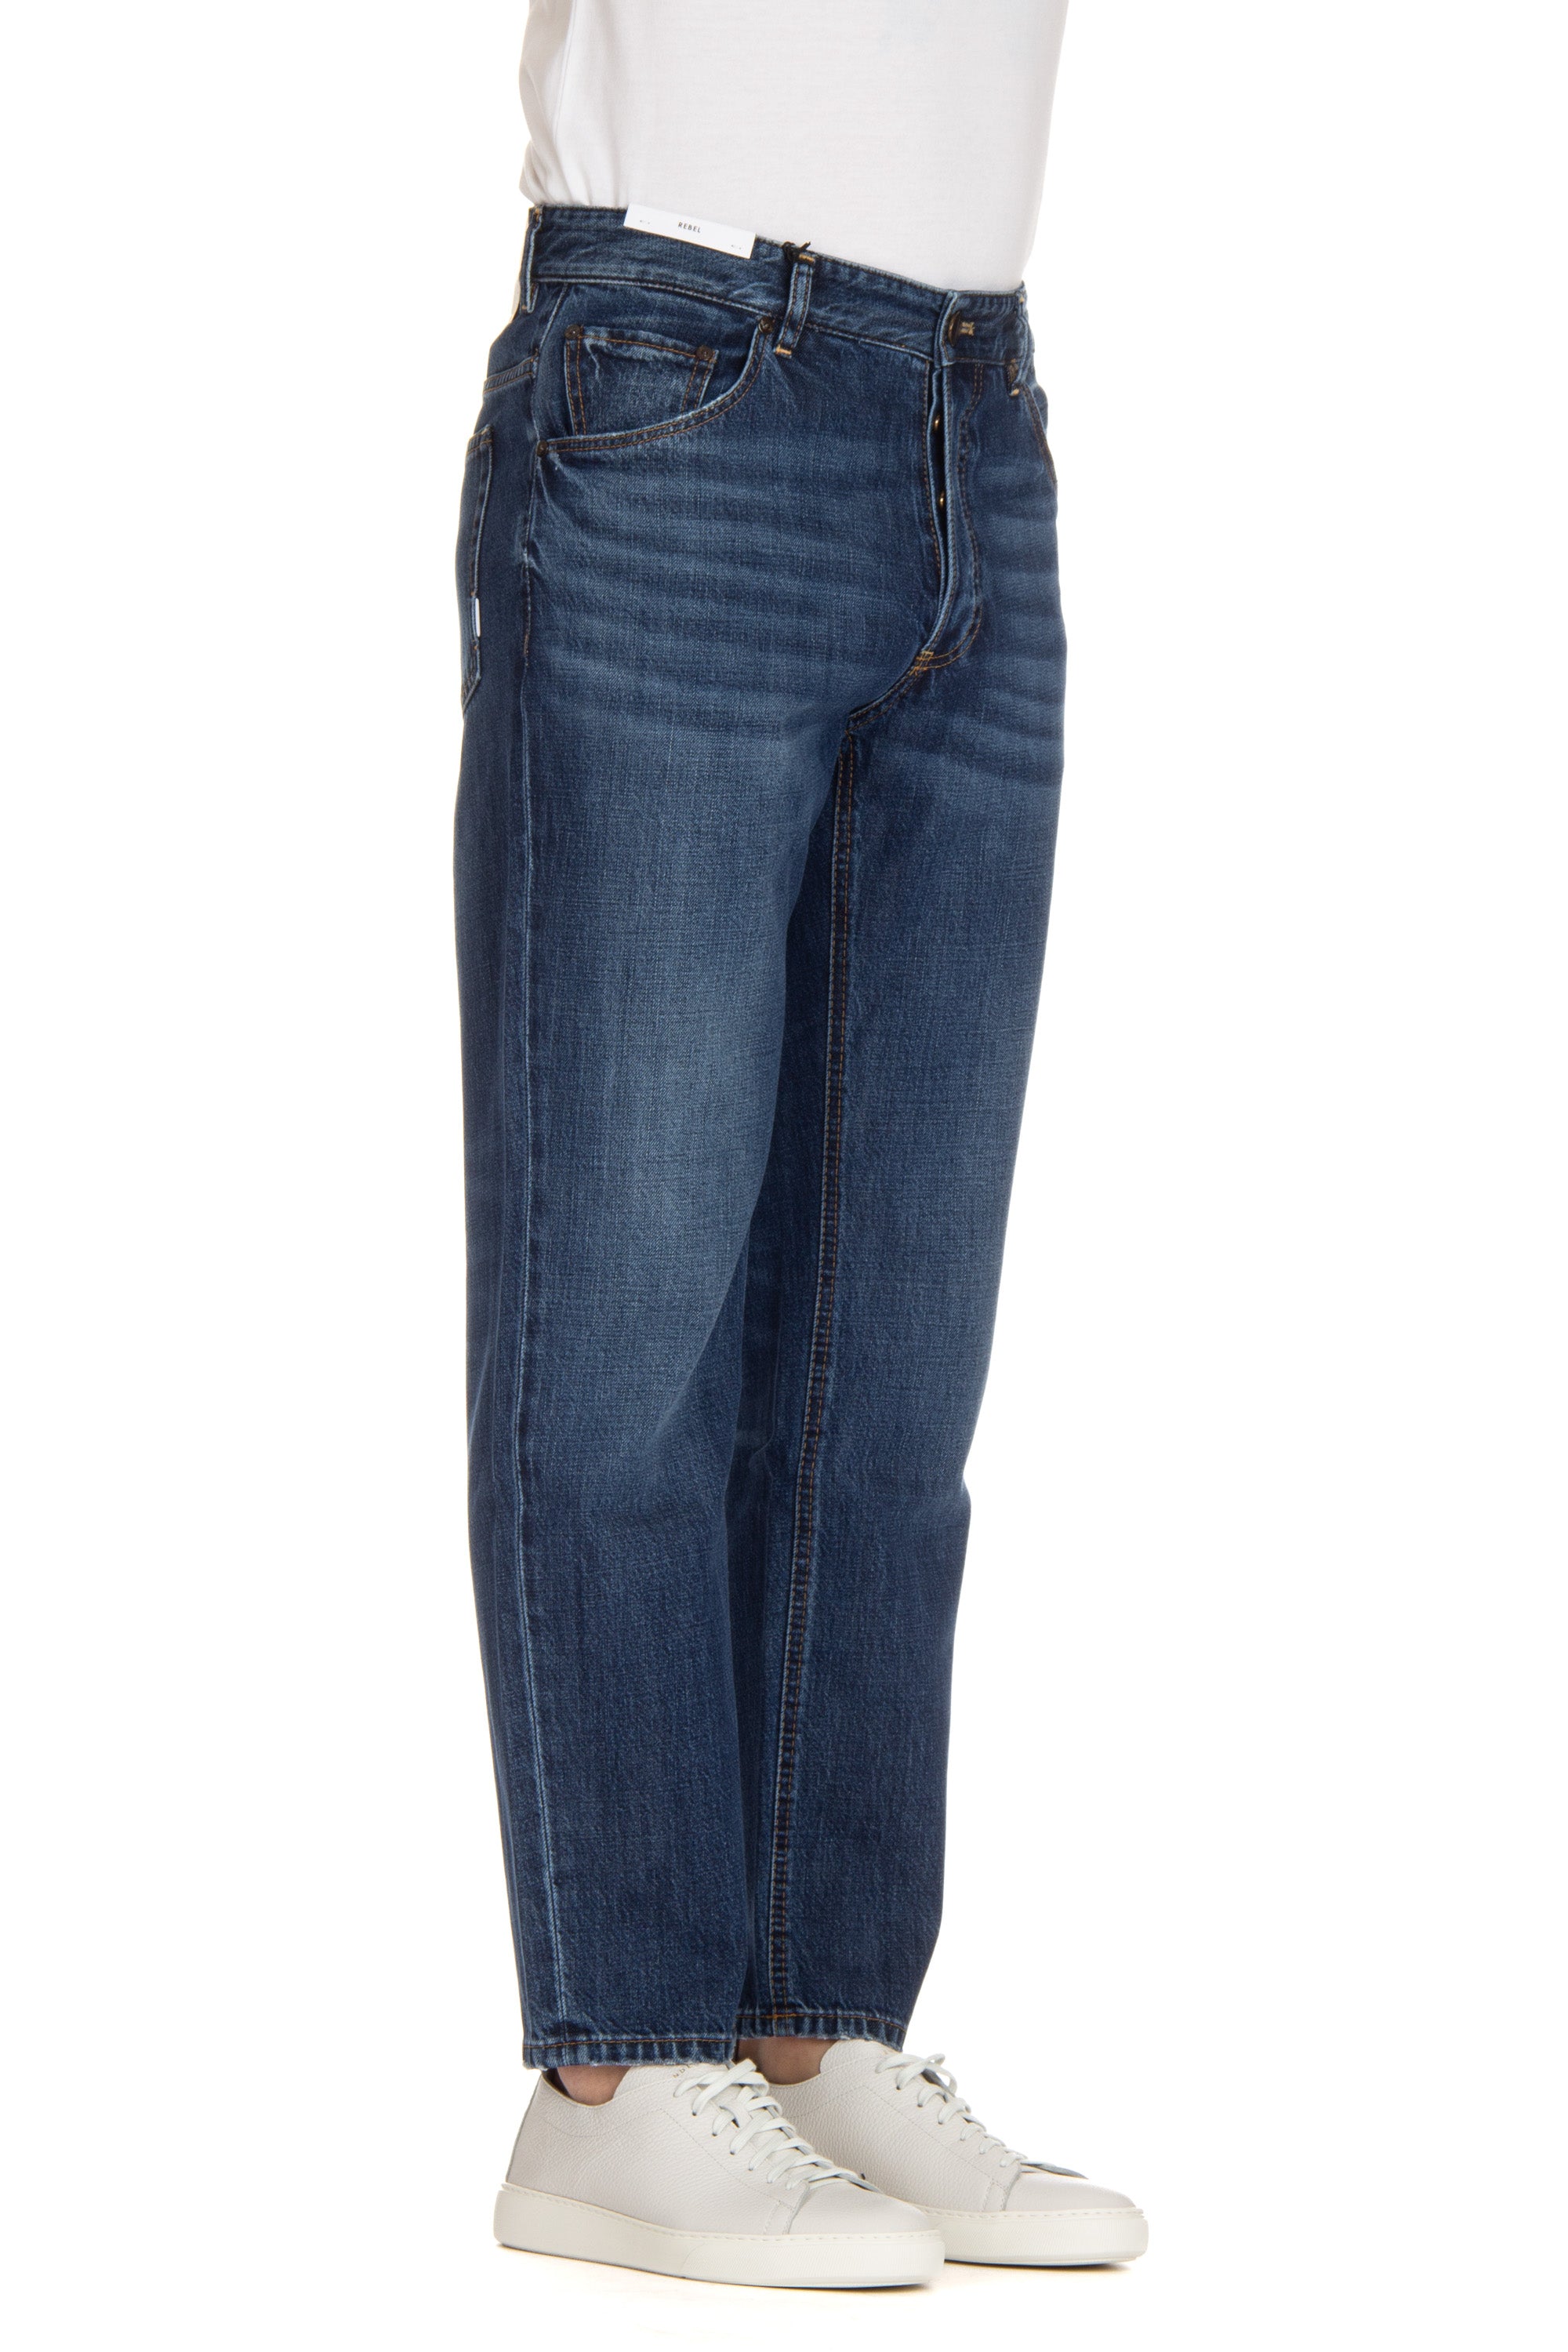 Rebel fit cotton-lyocel jeans